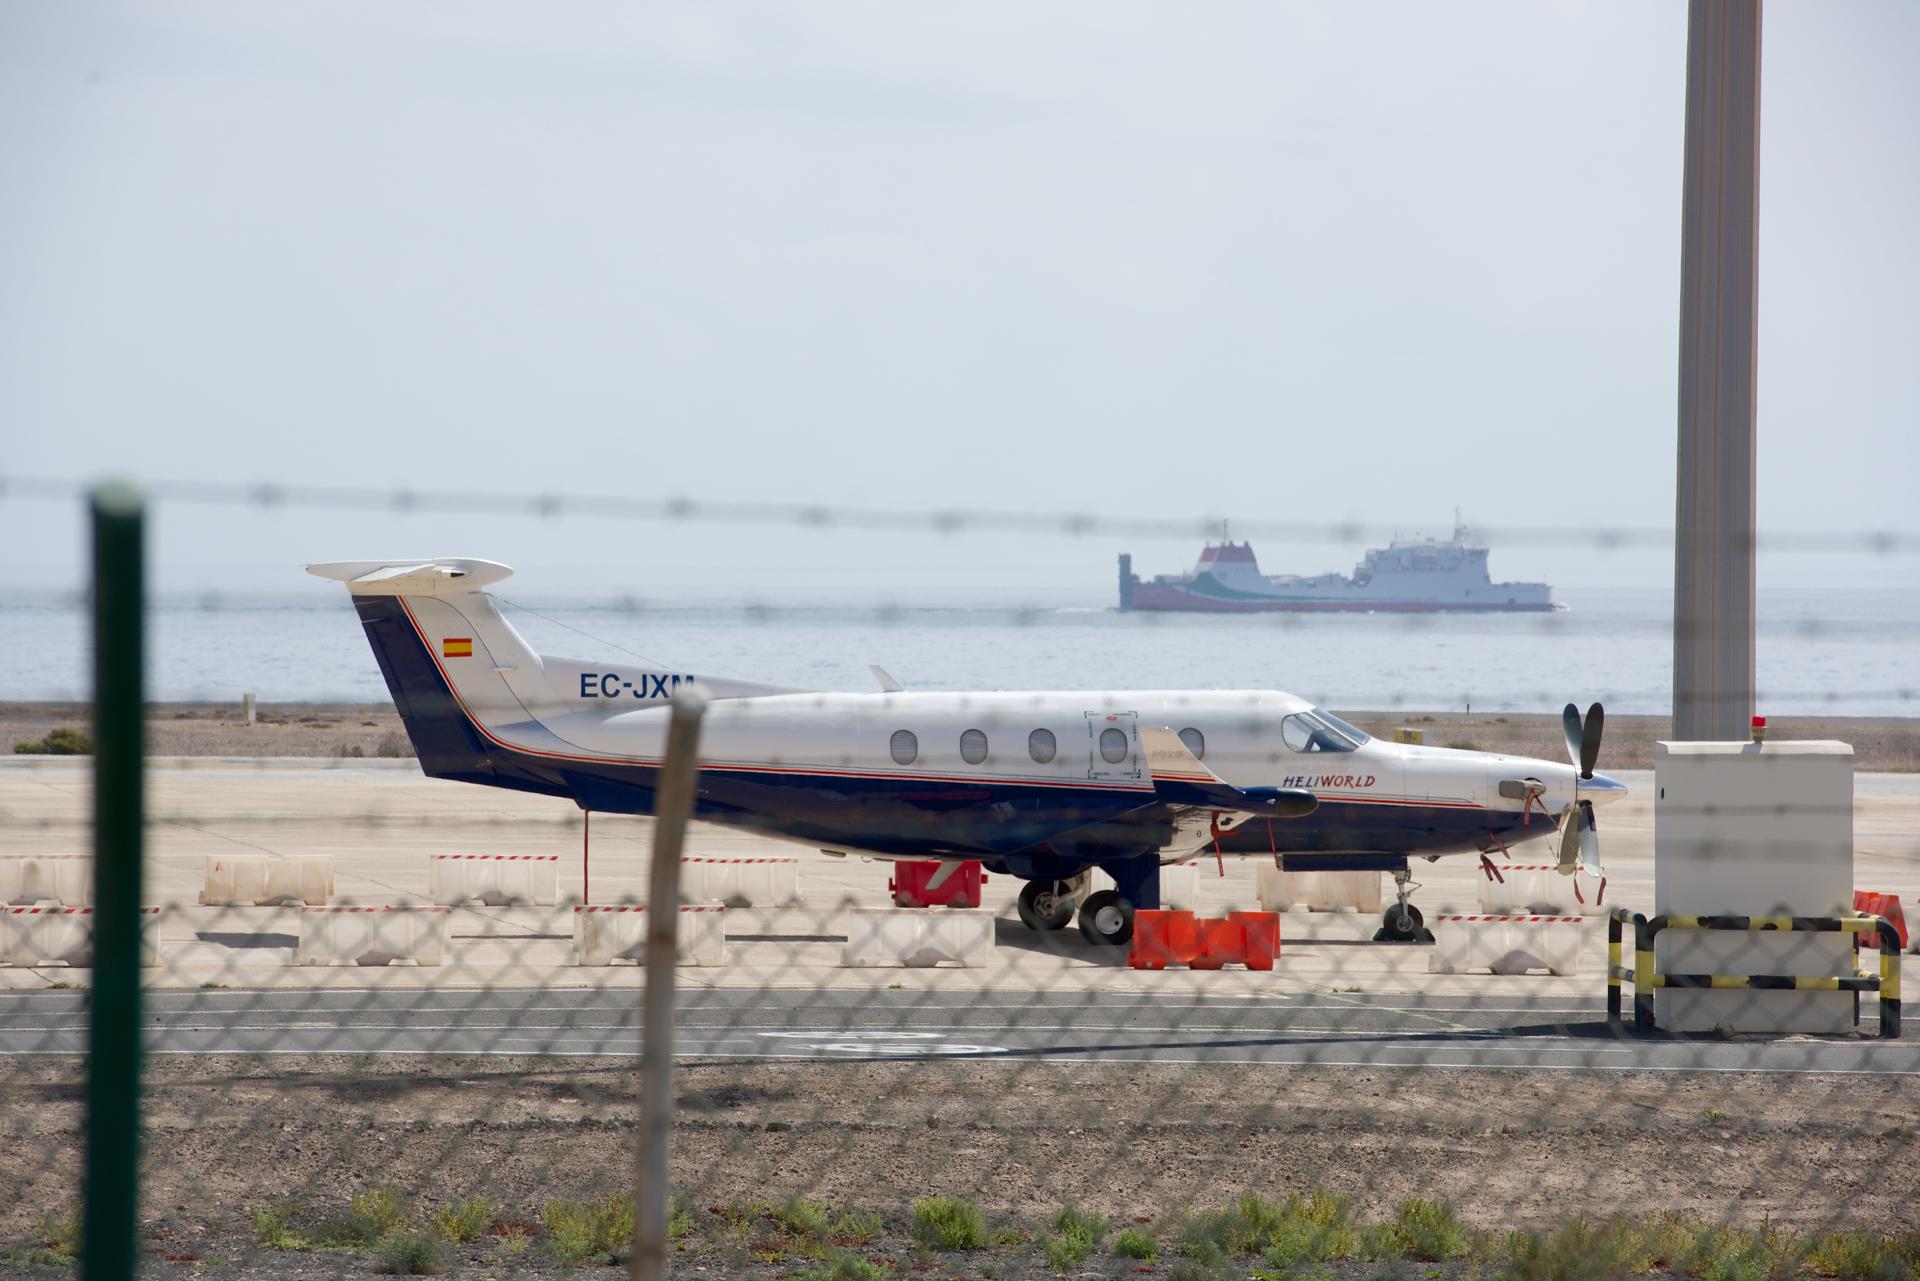 Foto tomada el 29 de marzo de 2019: Avioneta inmovilizada en el aeropuerto de Fuerteventura después de la Guardia Civil y la Policía descubrieran en su interior un alijo de 388 kilos de cocaína. EFE/Carlos de Saá